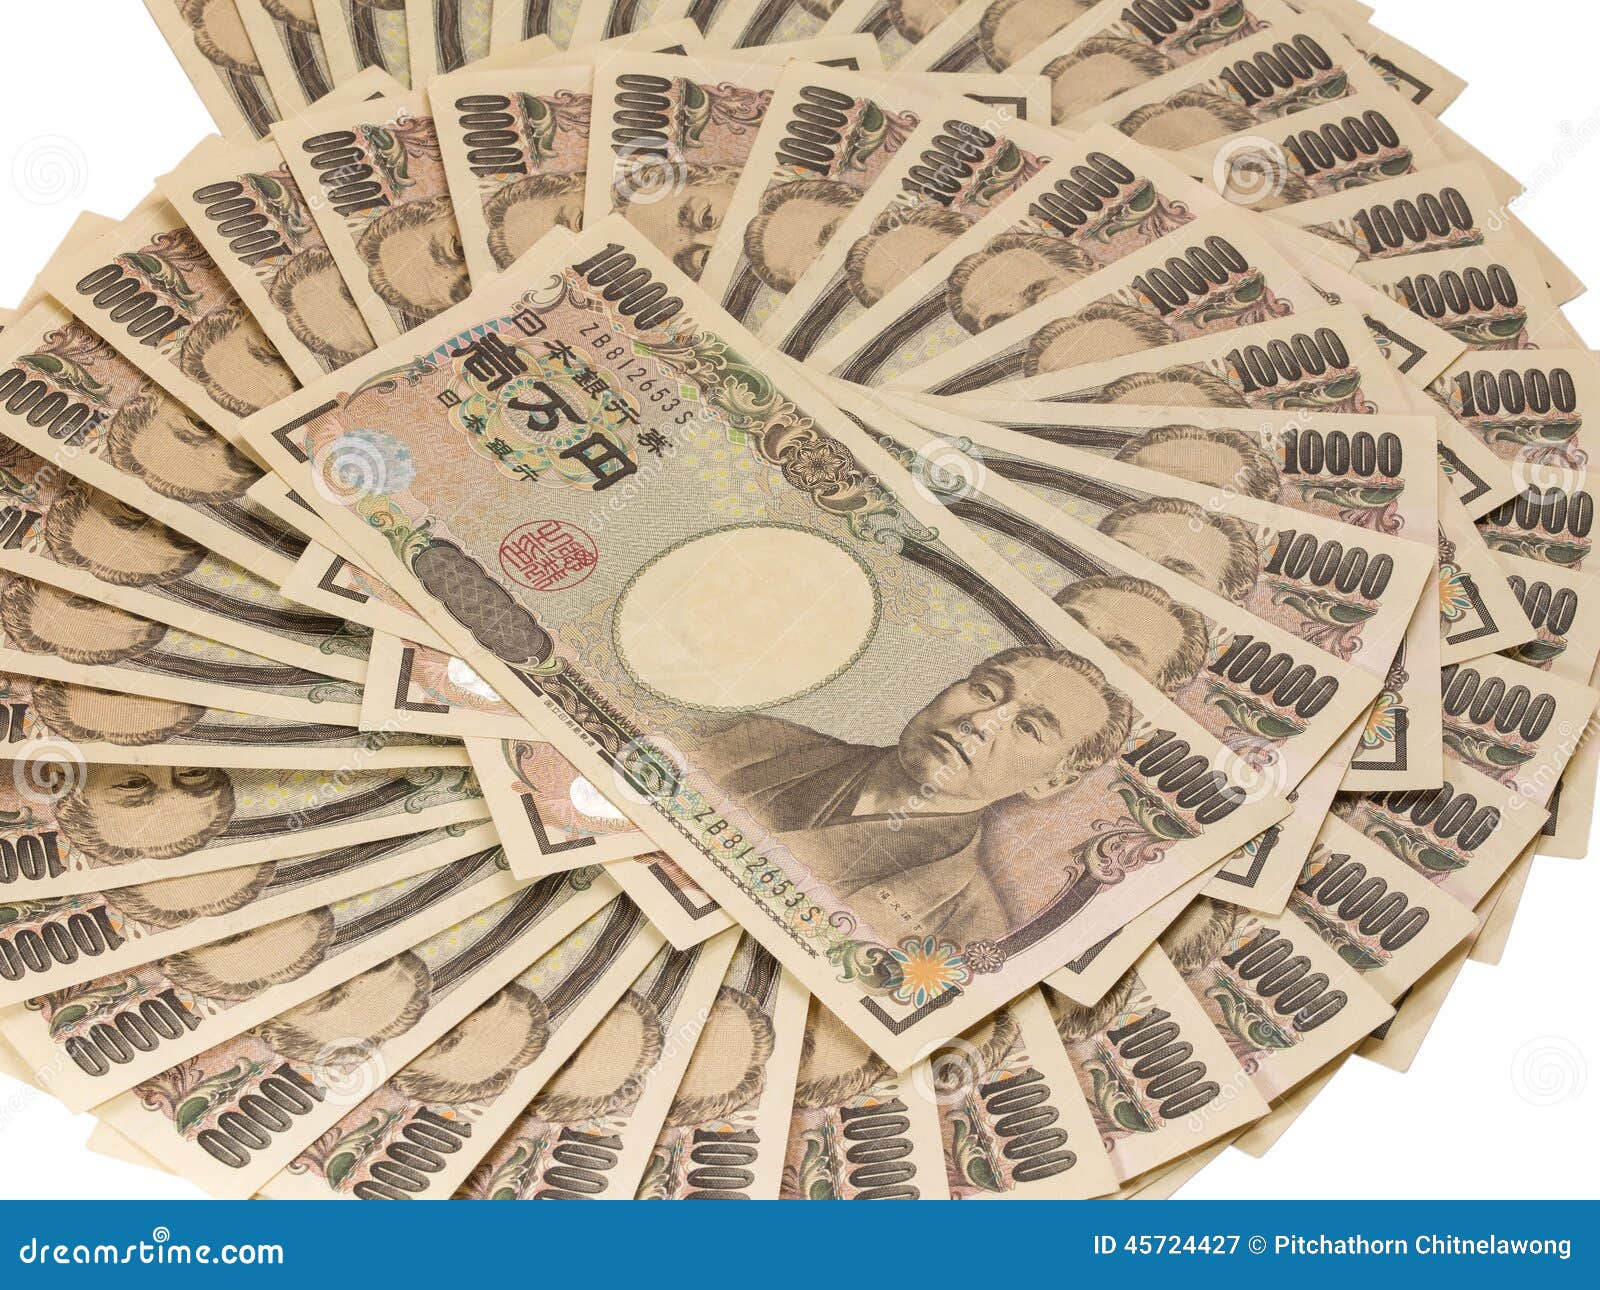 带你看一张最具中国文化的日元纸币，在日本却很难见得到